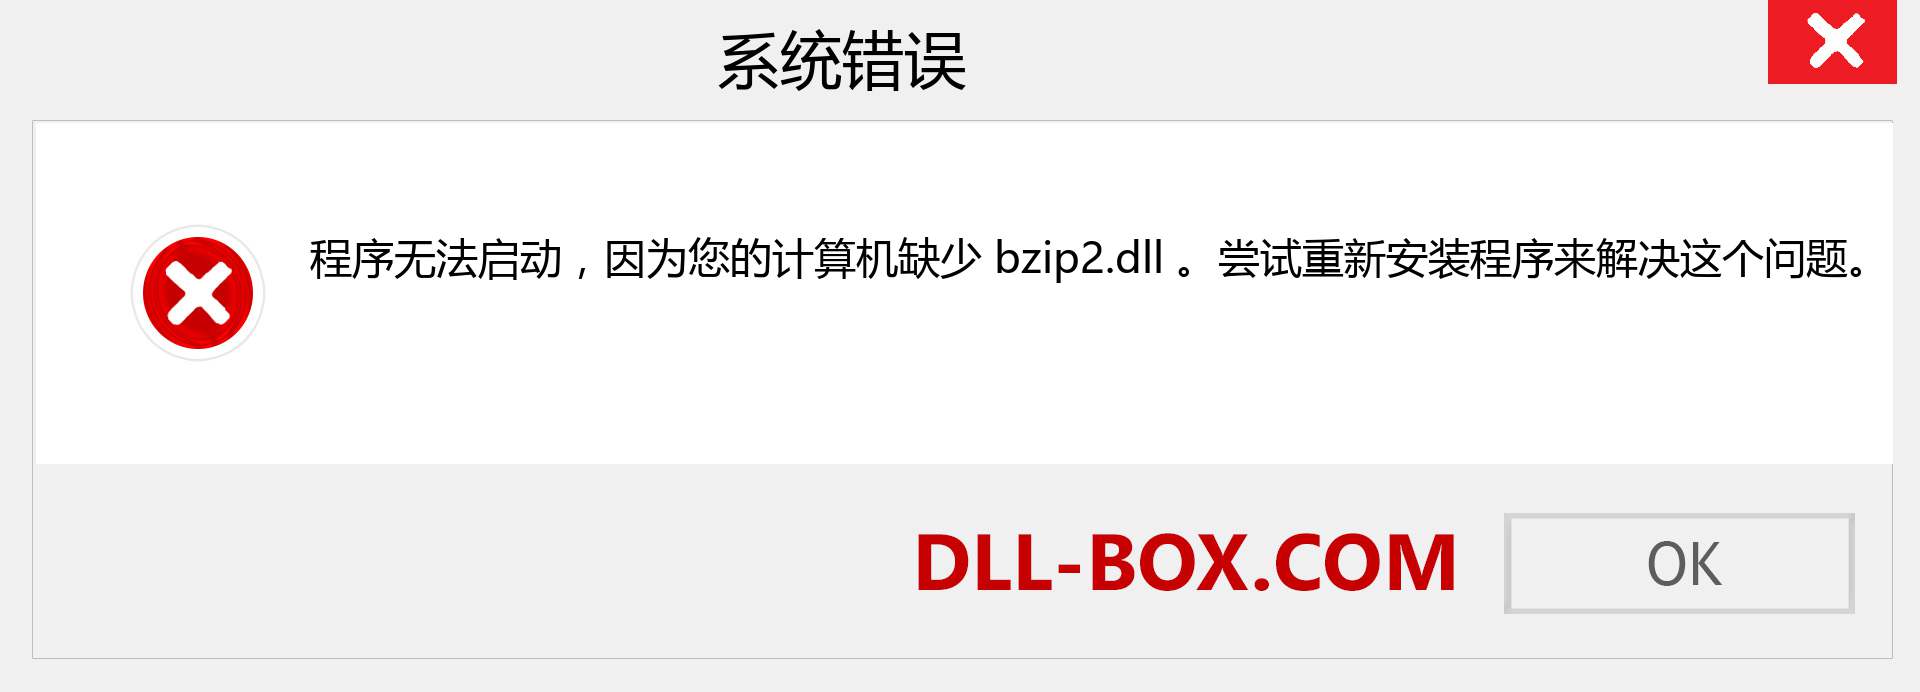 bzip2.dll 文件丢失？。 适用于 Windows 7、8、10 的下载 - 修复 Windows、照片、图像上的 bzip2 dll 丢失错误